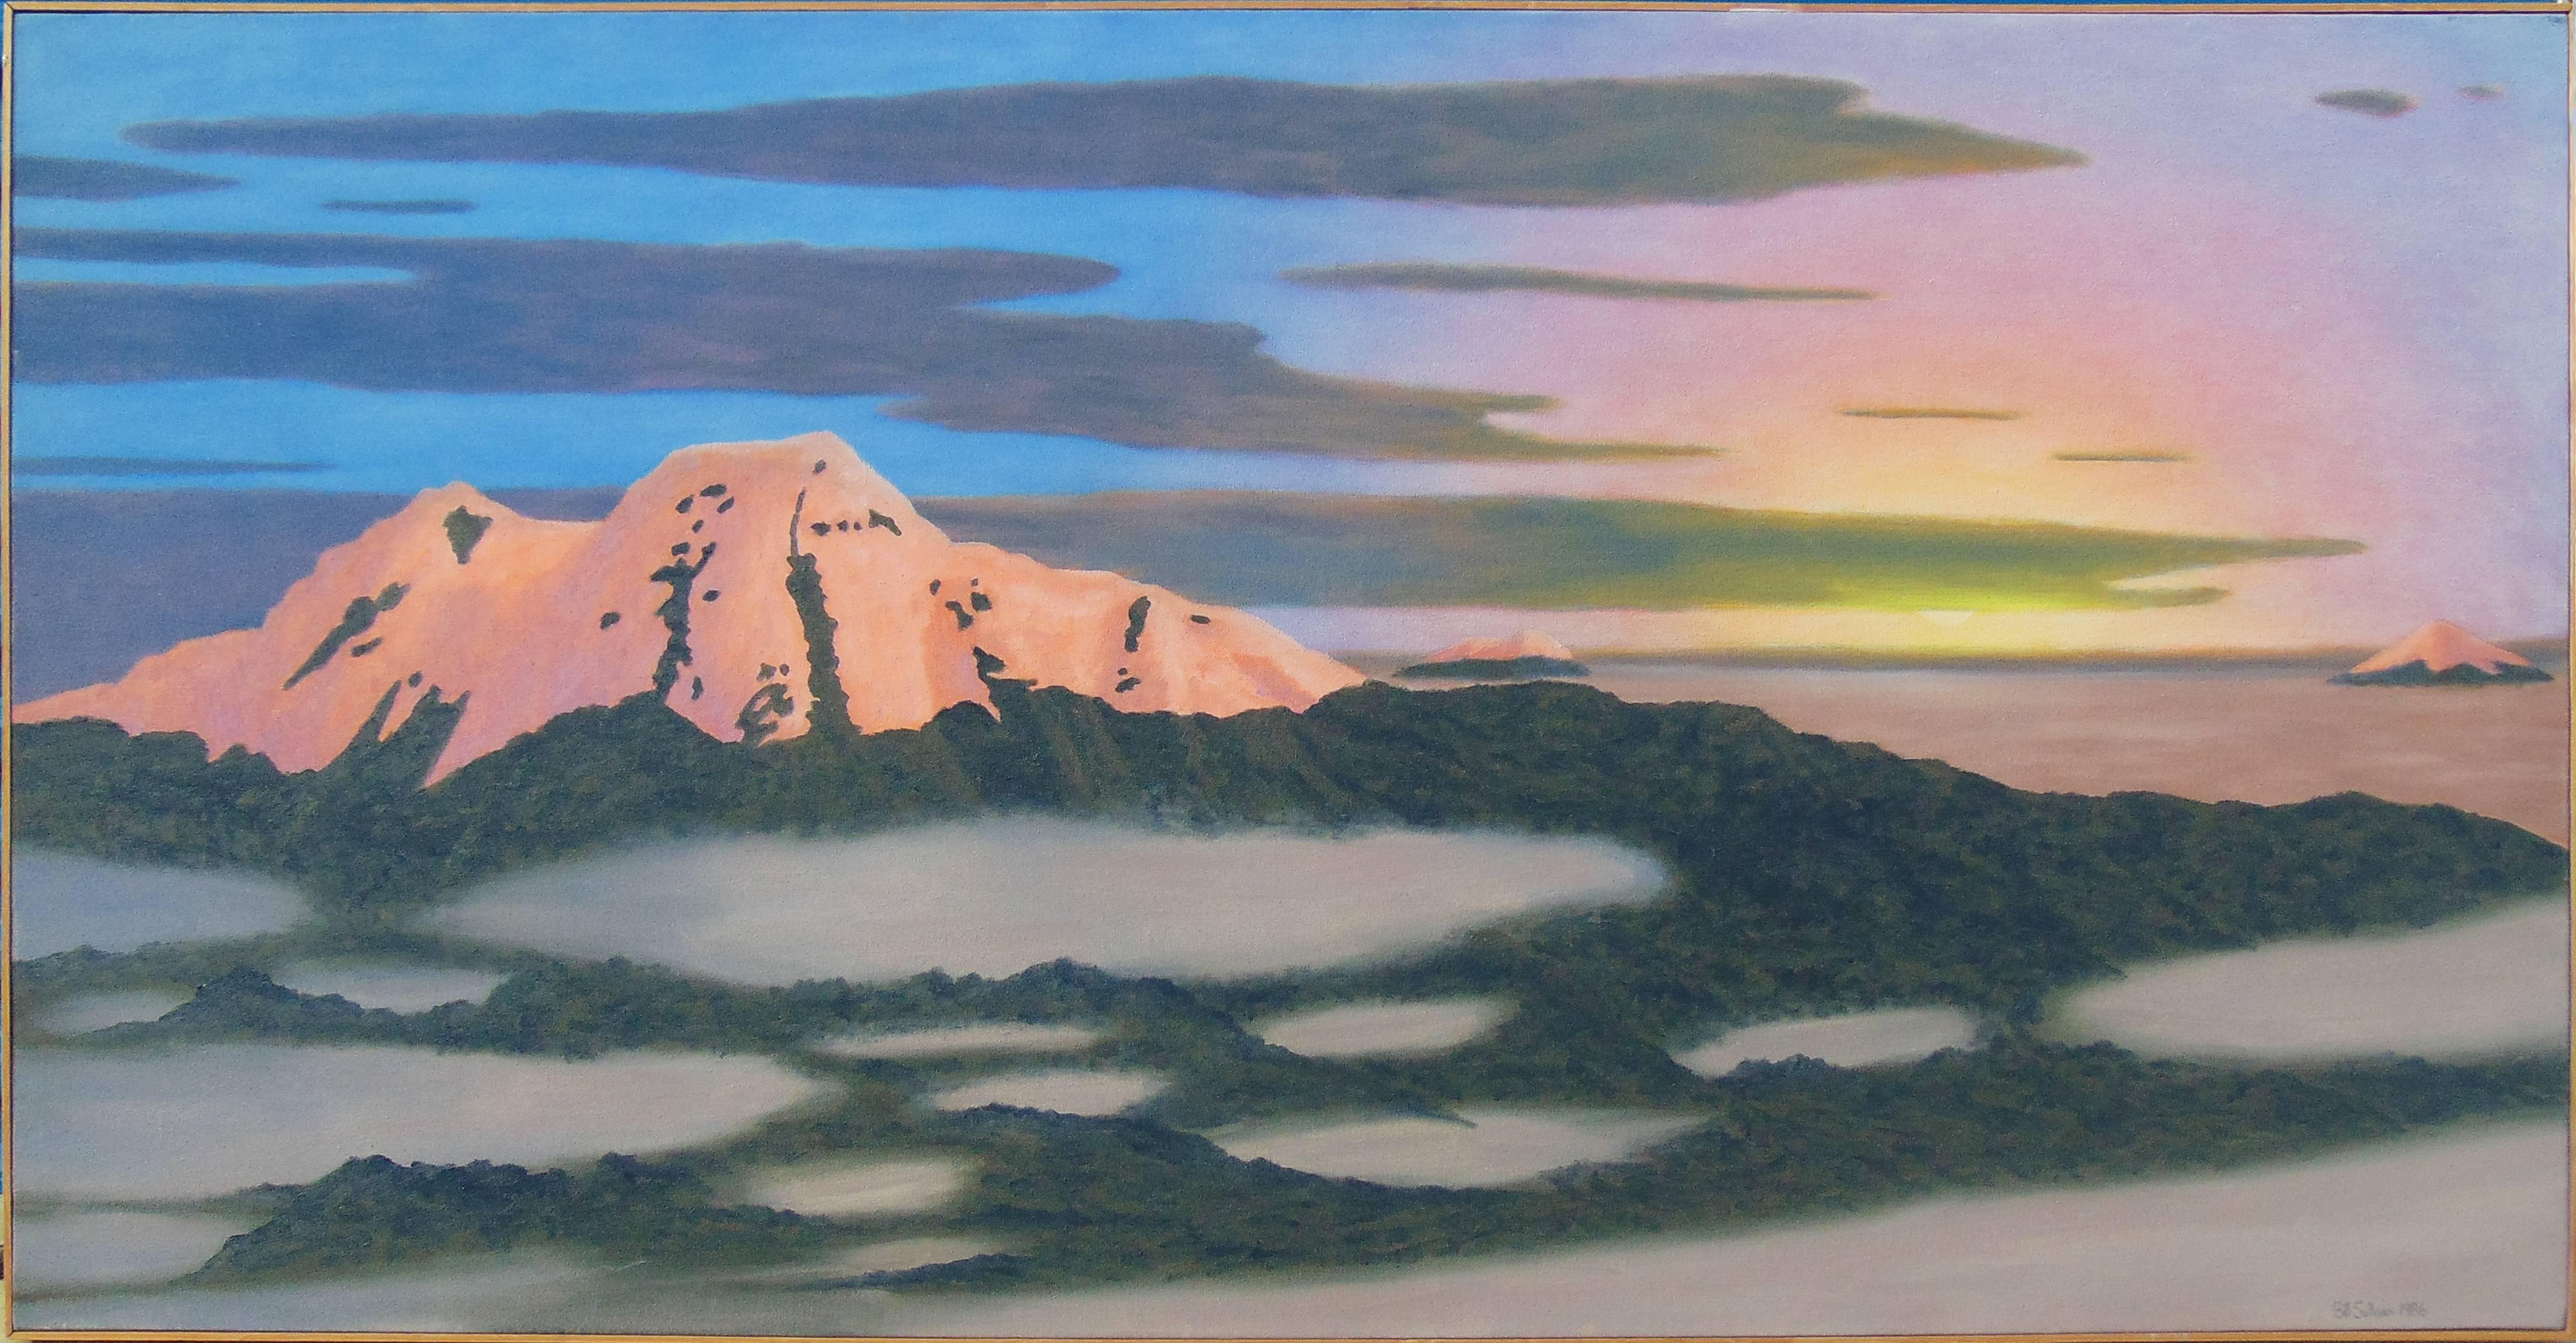 Landscape Painting Bill Sullivan - Cayembe (peinture à l'huile contemporaine d'un volcan dans les Andes équatoriennes)